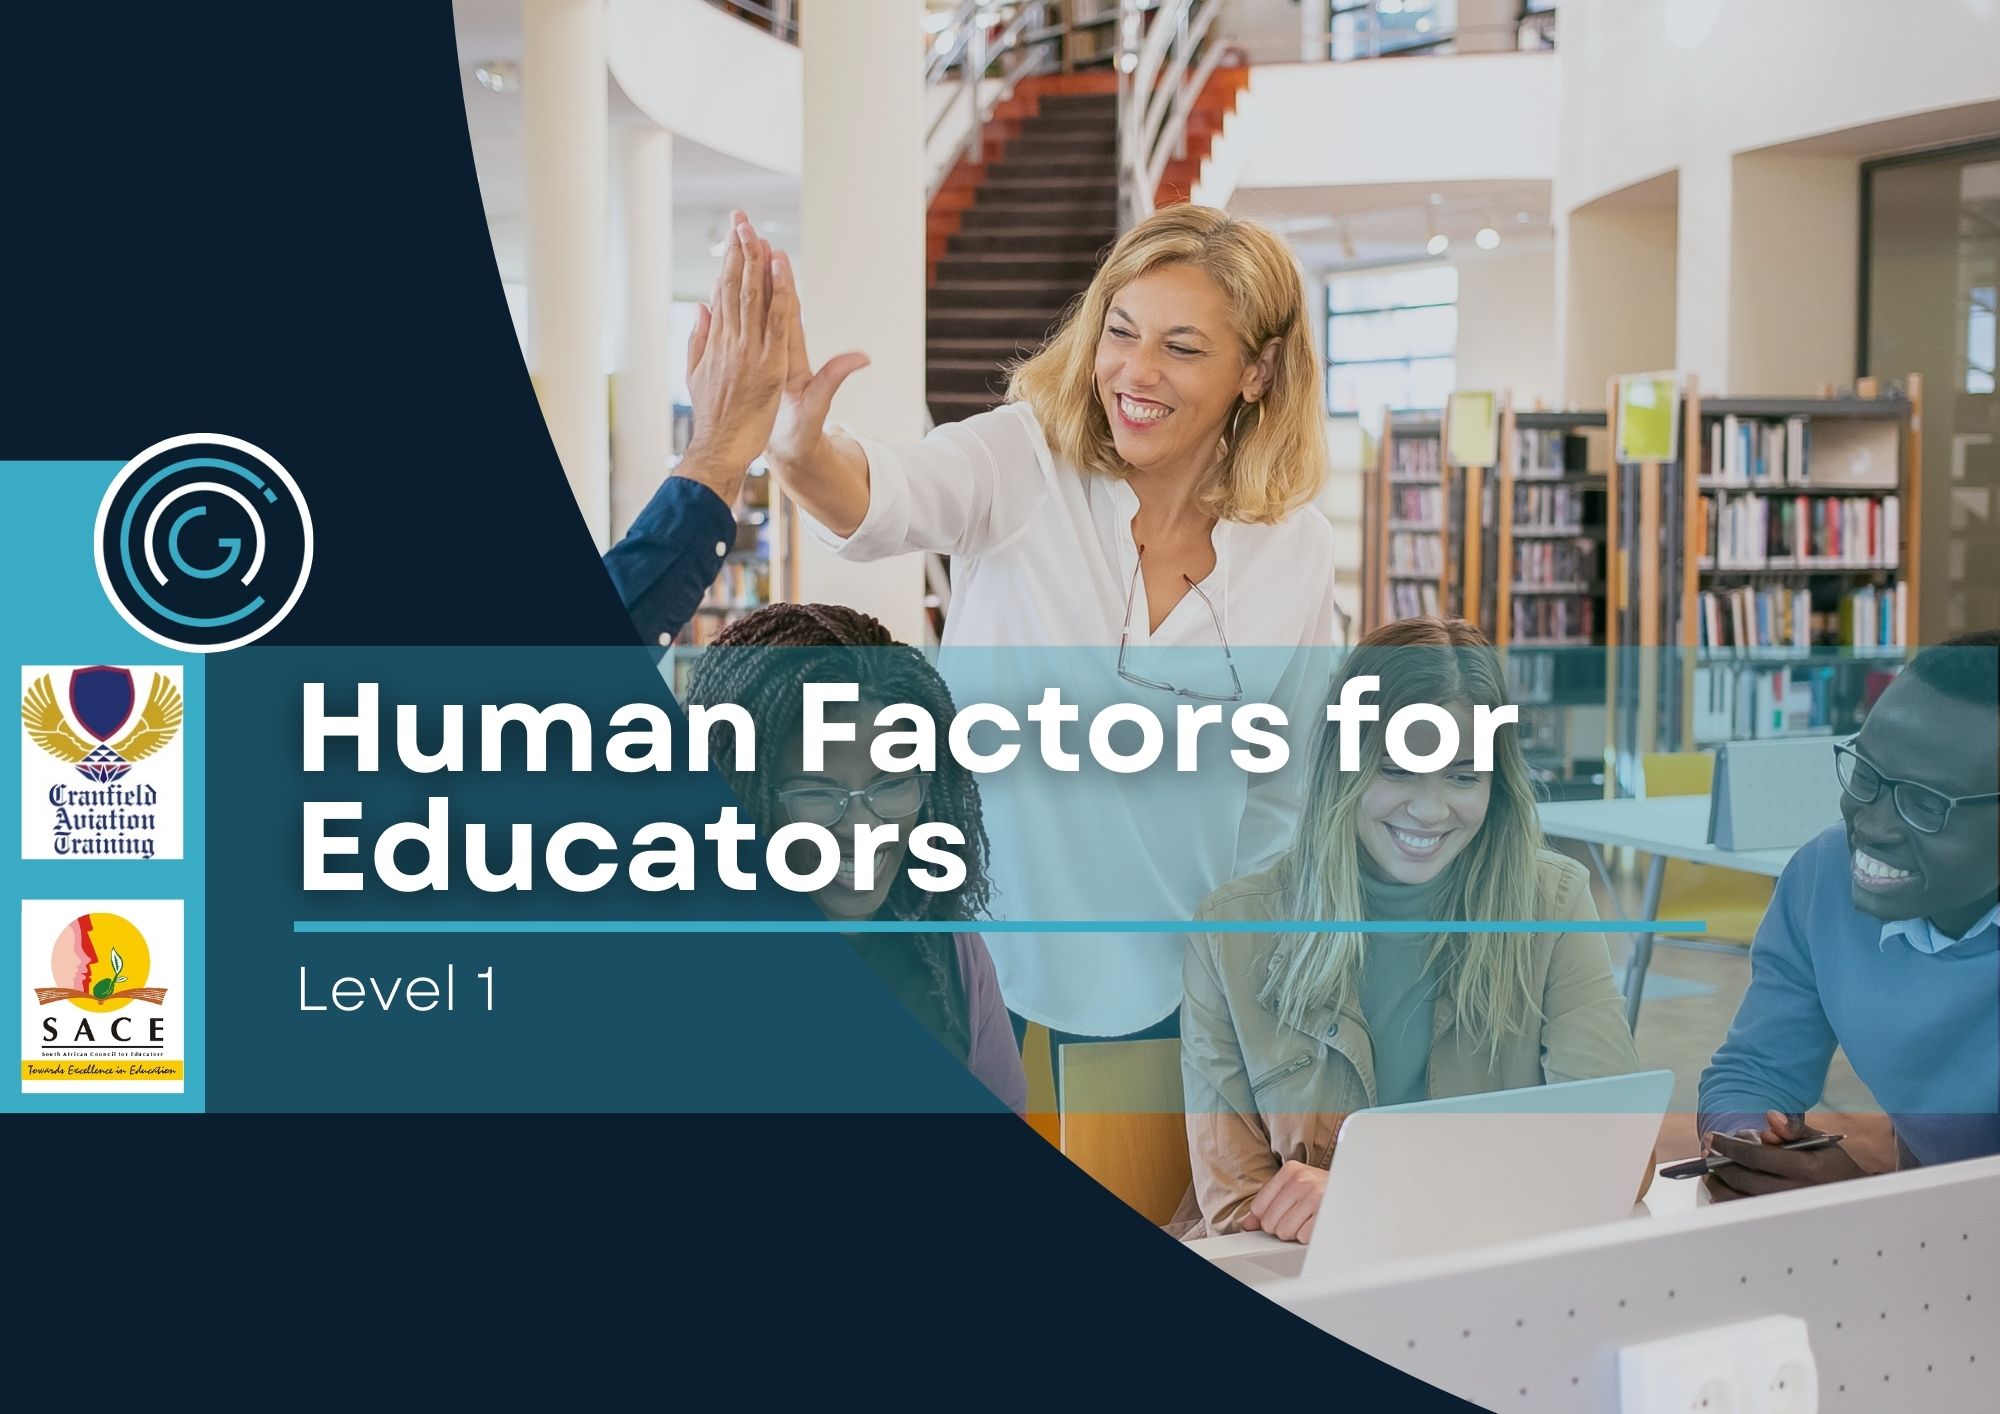 Human Factors for Educators Level 1